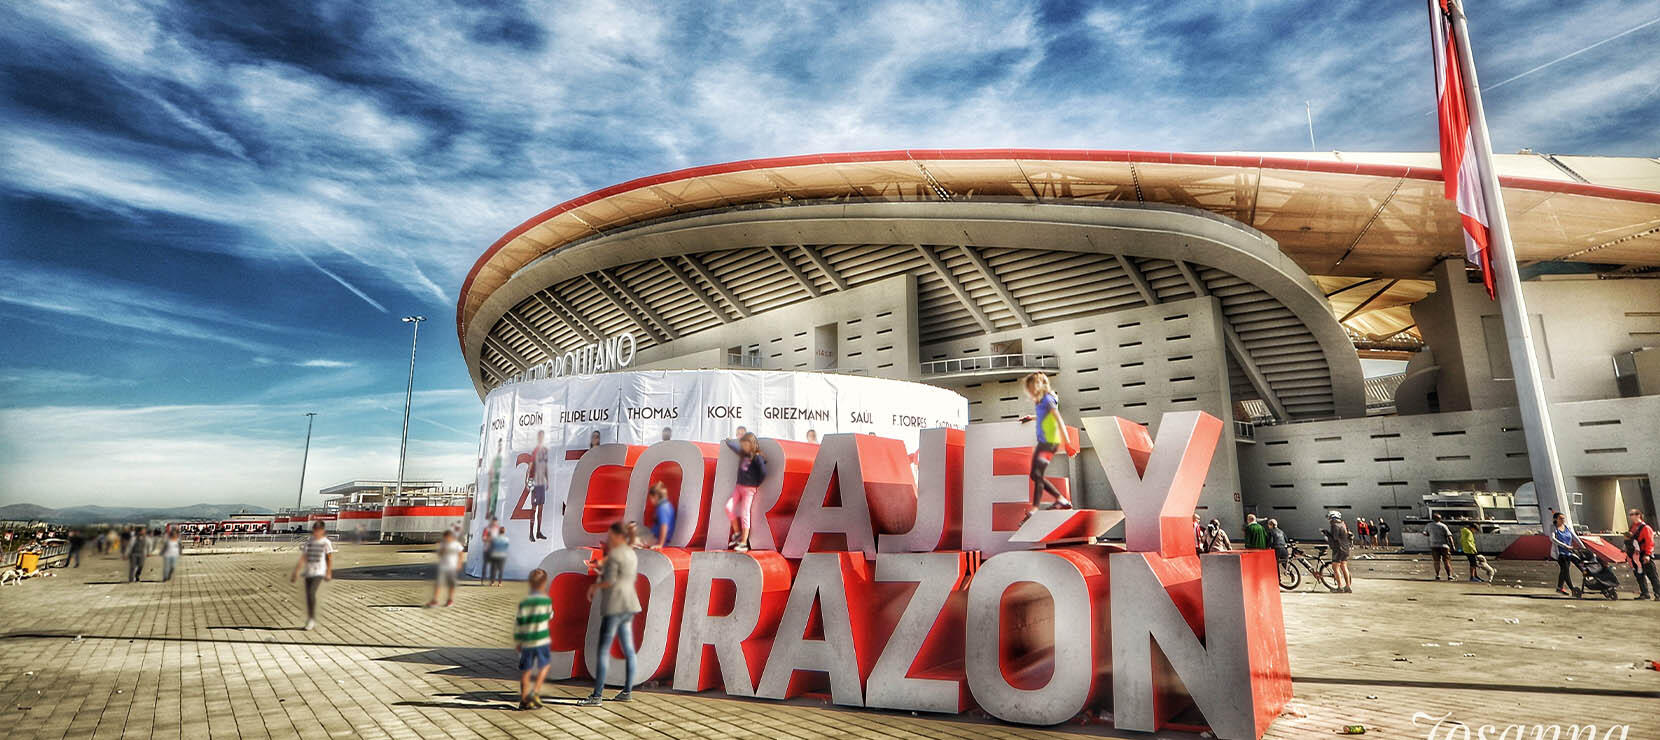 Nueva Adjudicación: Wanda Metropolitano